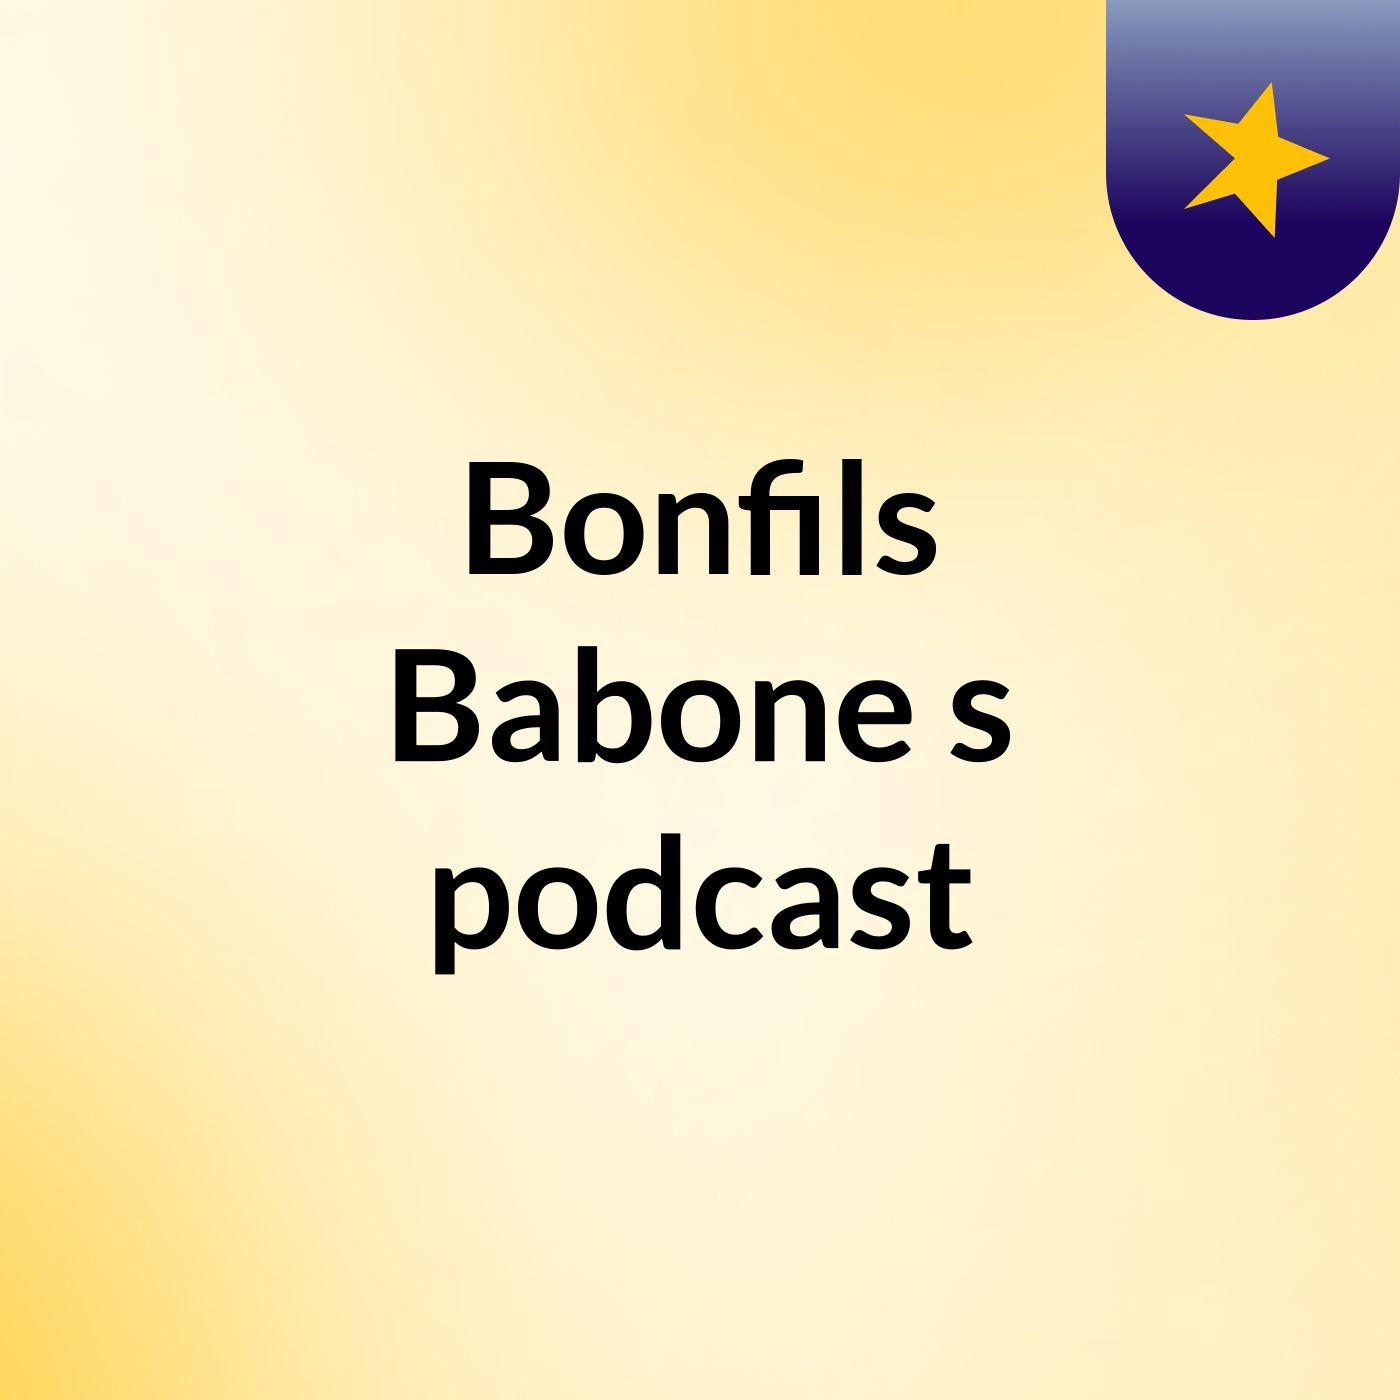 Episode 3 - Bonfils Babone's podcast